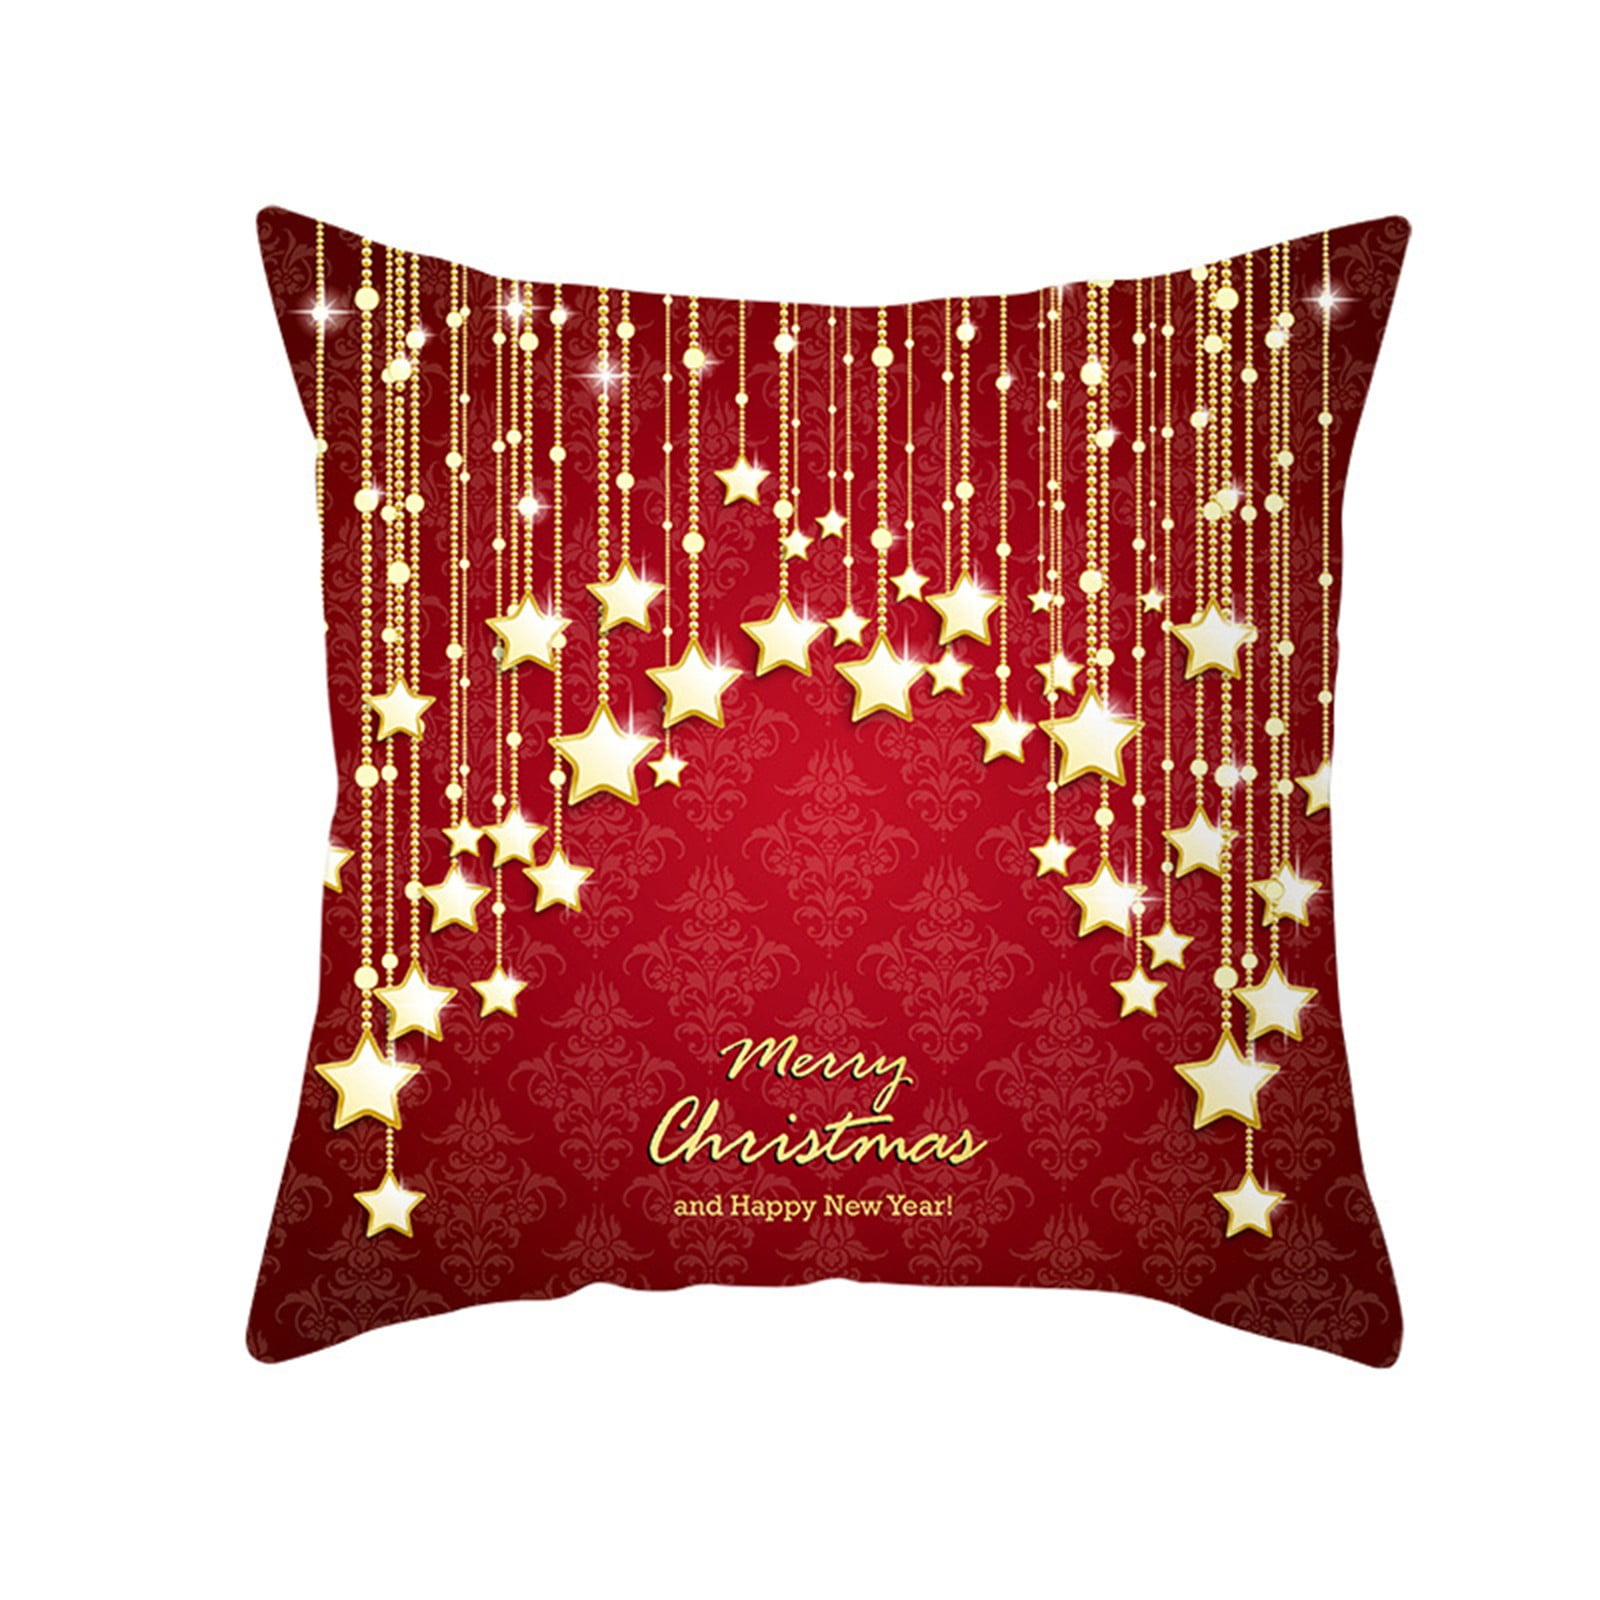 Christmas Xmas Gift Throw Pillow Case Cover Cushion Sofa Car Home Decor 2020 